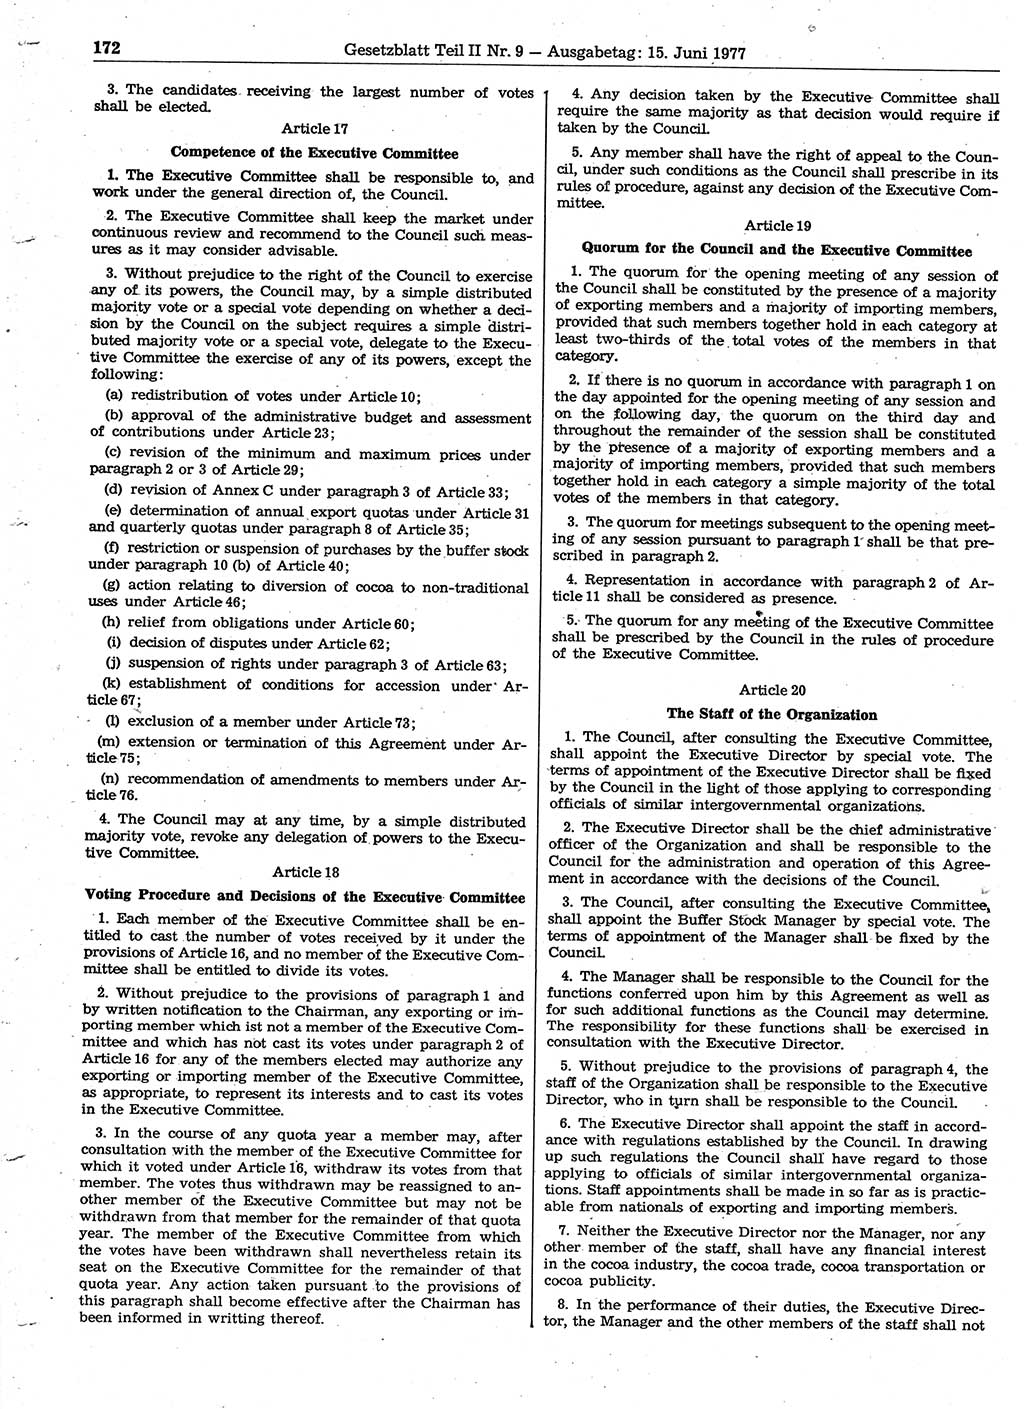 Gesetzblatt (GBl.) der Deutschen Demokratischen Republik (DDR) Teil ⅠⅠ 1977, Seite 172 (GBl. DDR ⅠⅠ 1977, S. 172)